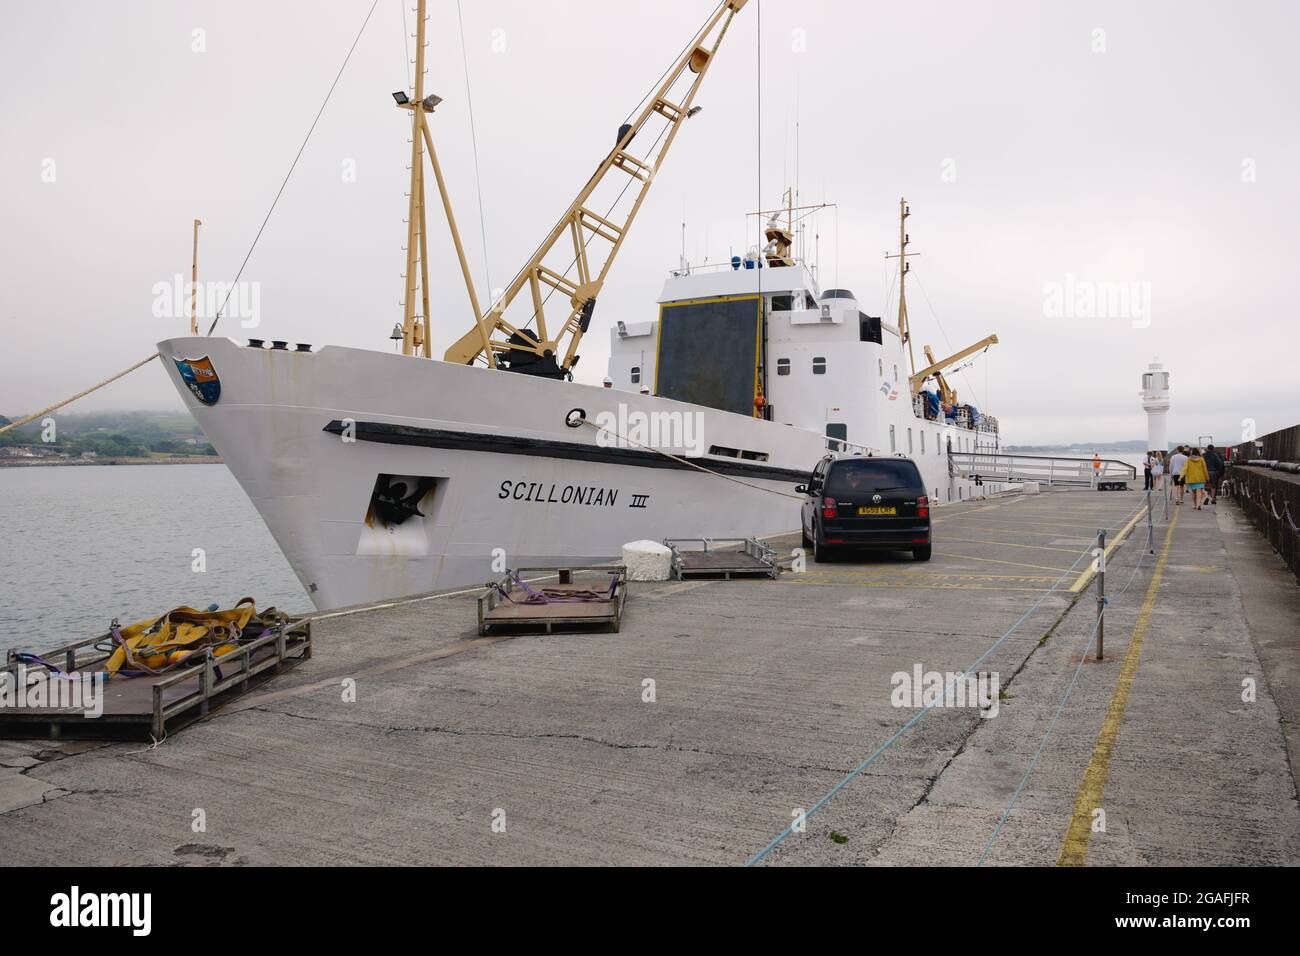 Die Fähre Scillonian III dockte im Hafen von Penzance an, der für die Inseln von Scilly, Cornwall, England, Großbritannien, im Juli 2021 bestimmt war Stockfoto